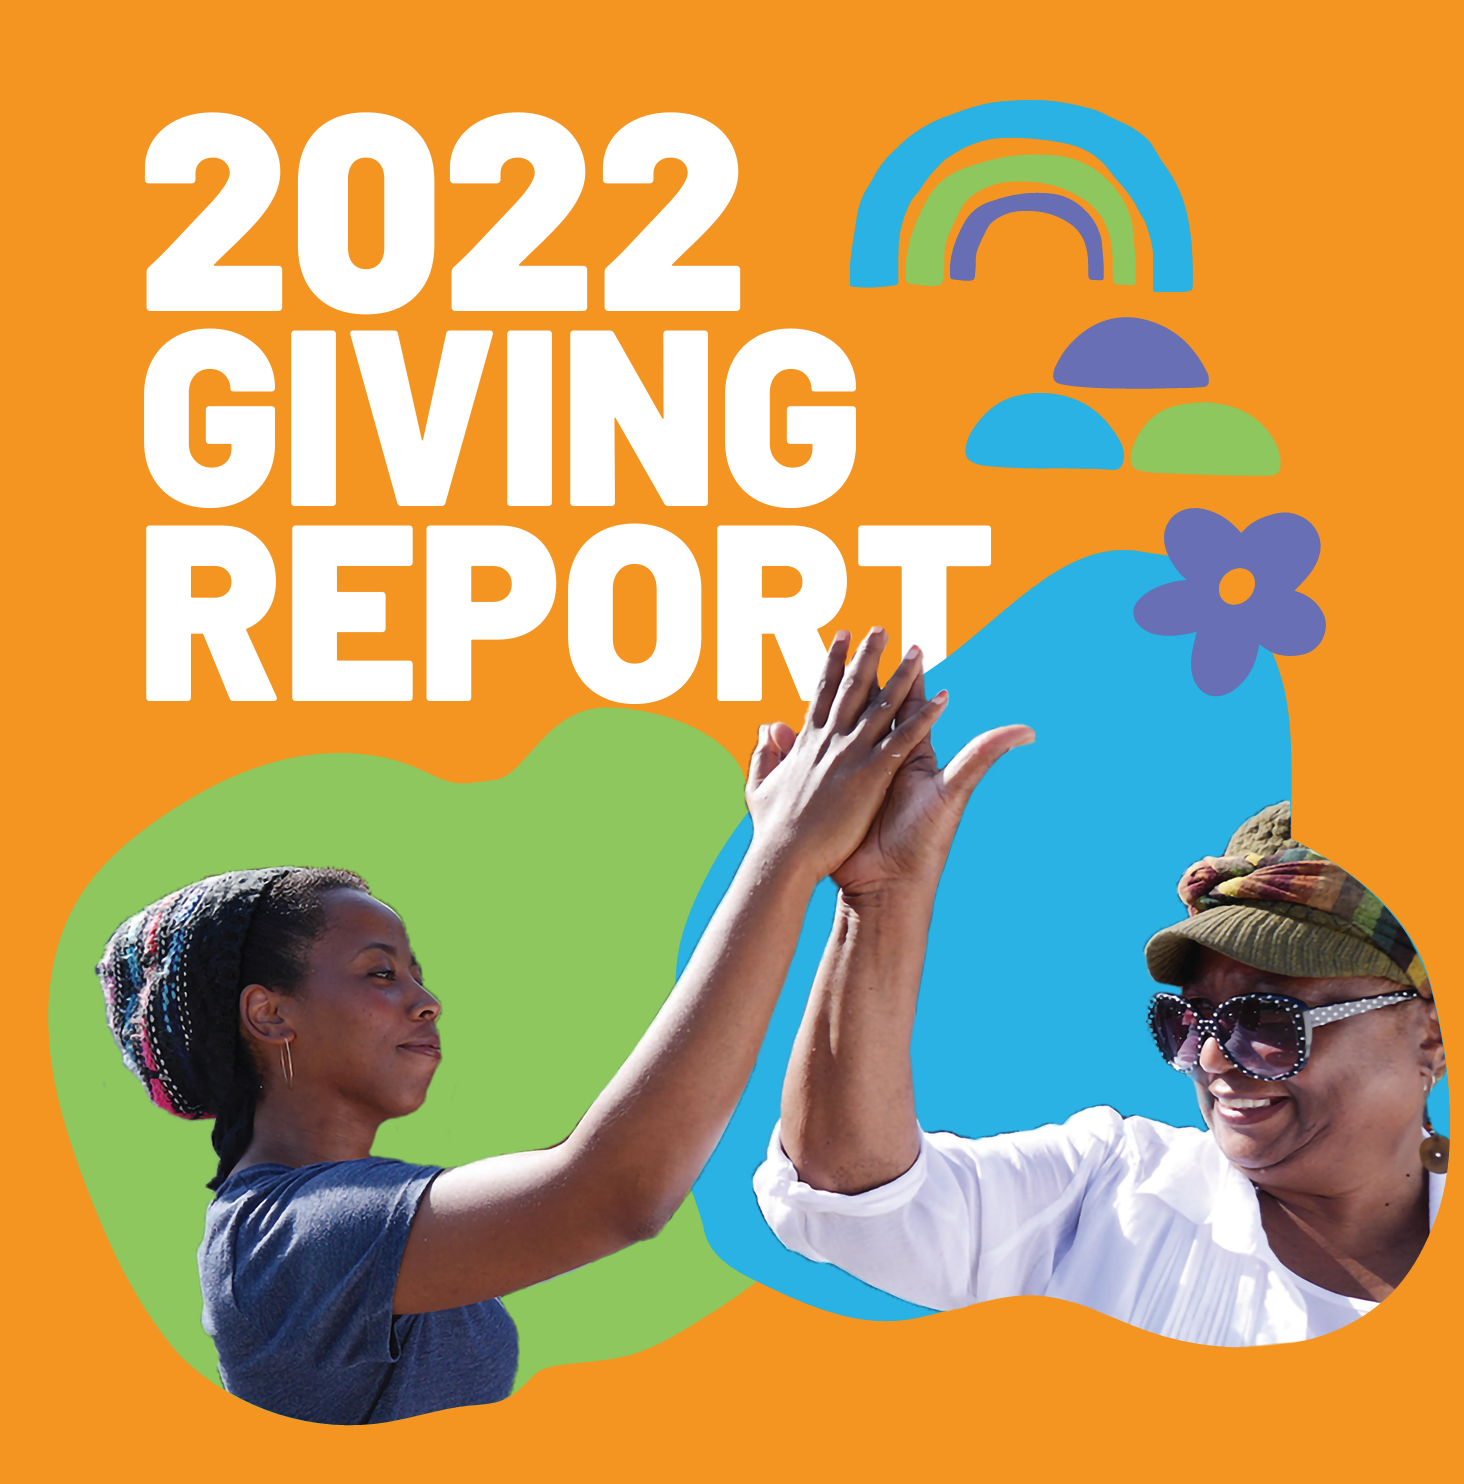 Relatório de Doações 2022: Aumentando nosso impacto por meio de mudanças positivas